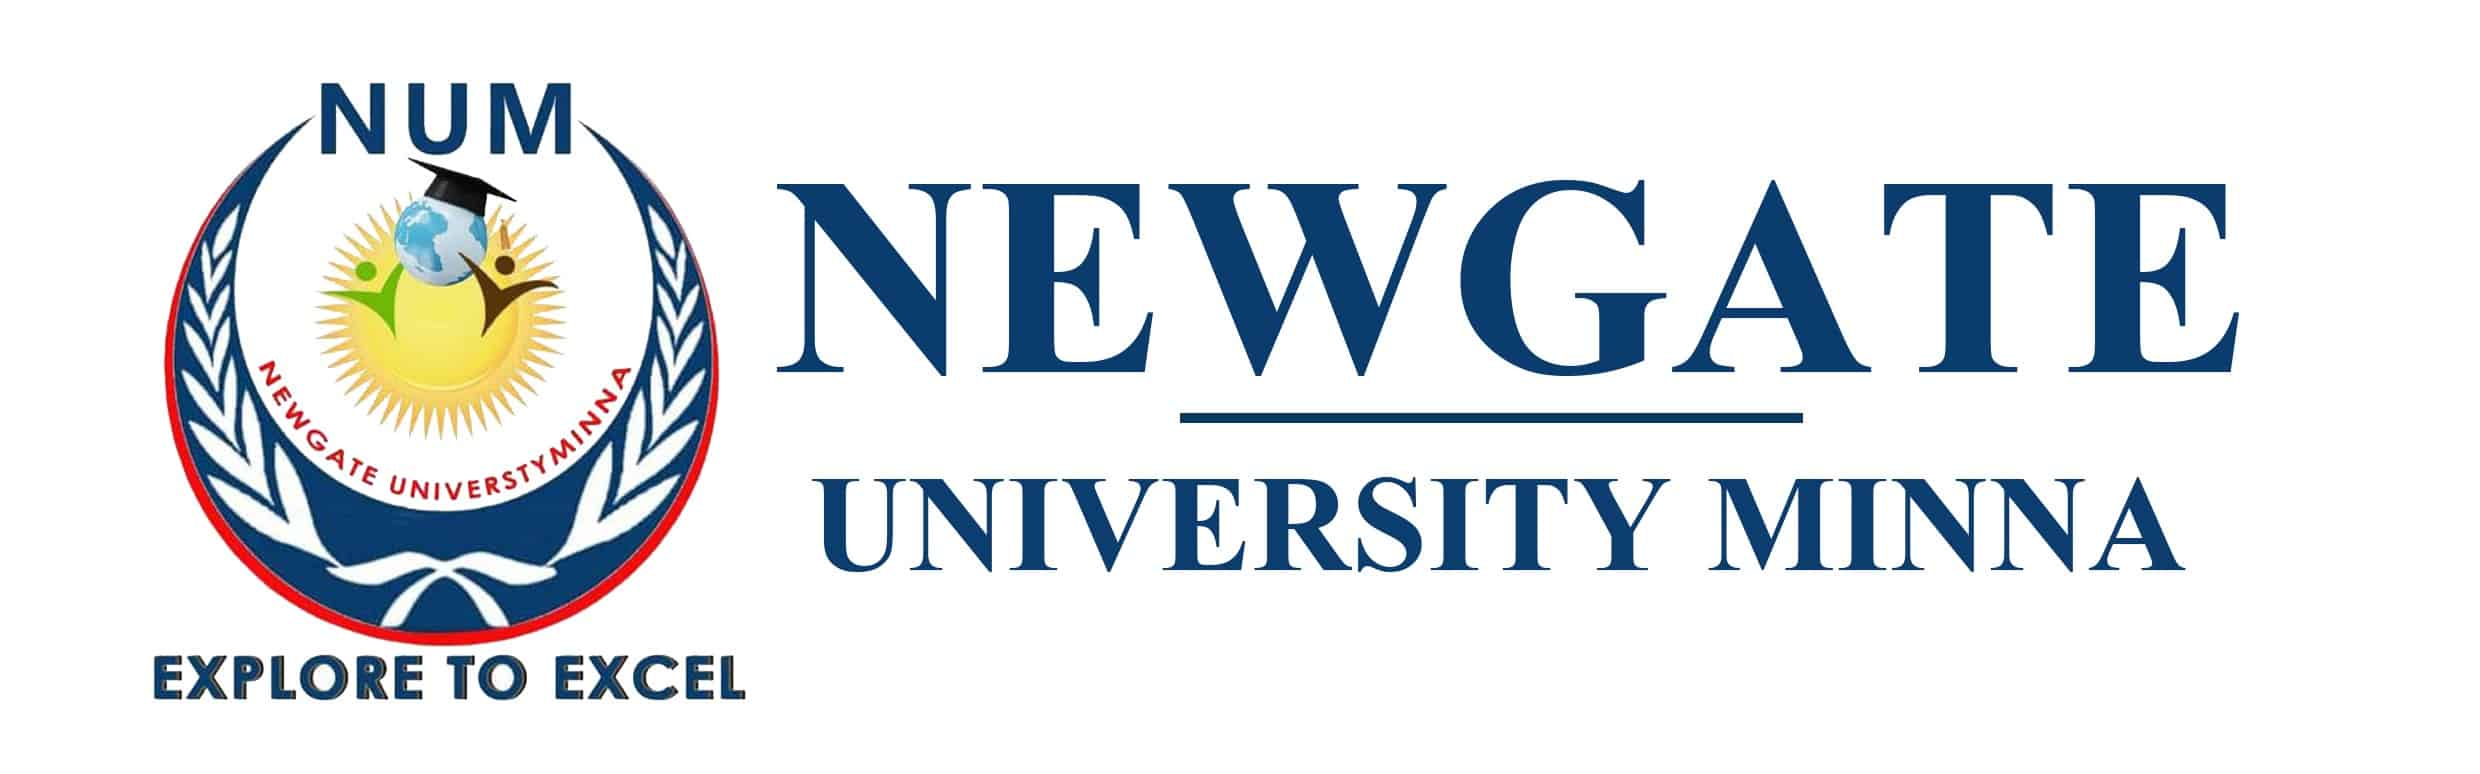 Newgate University Minna (NUM) Post UTME Form